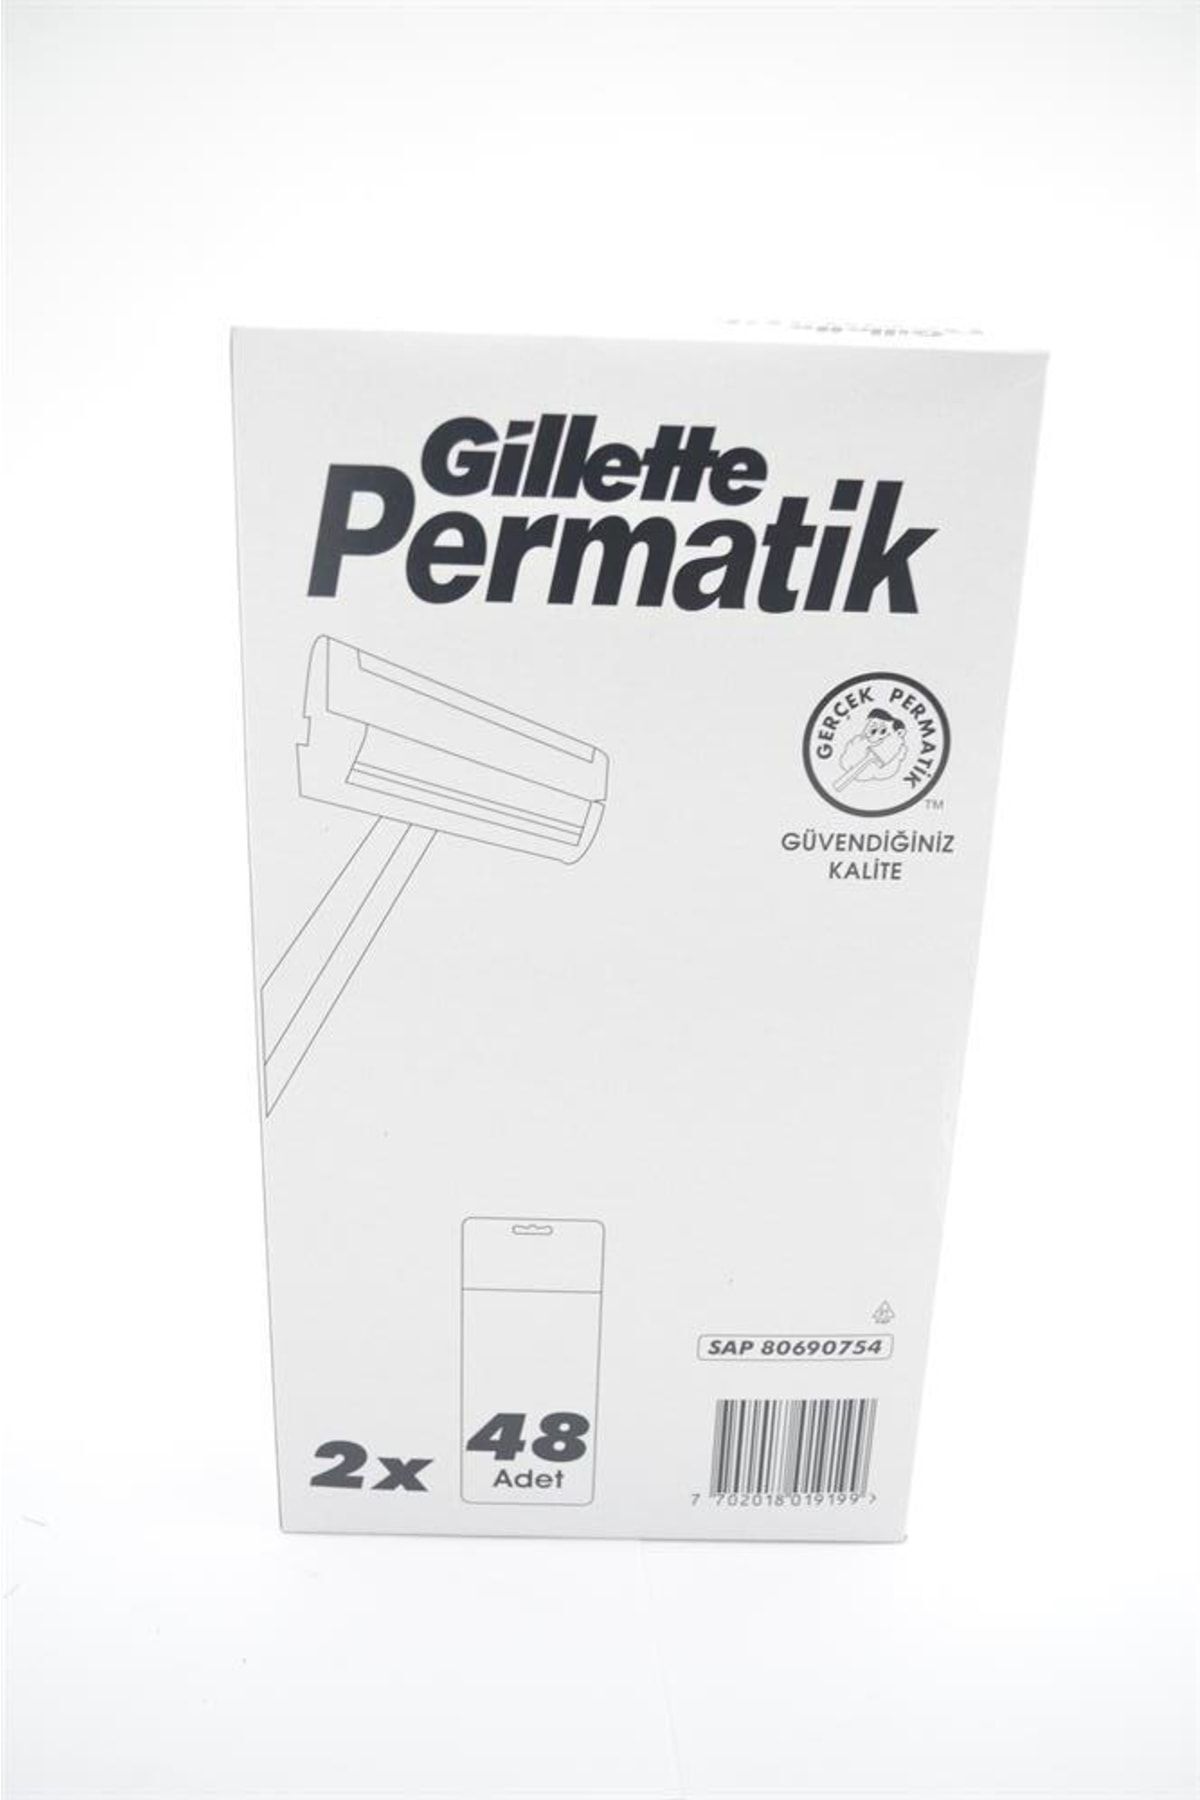 Permatik Gillette 96 Adet